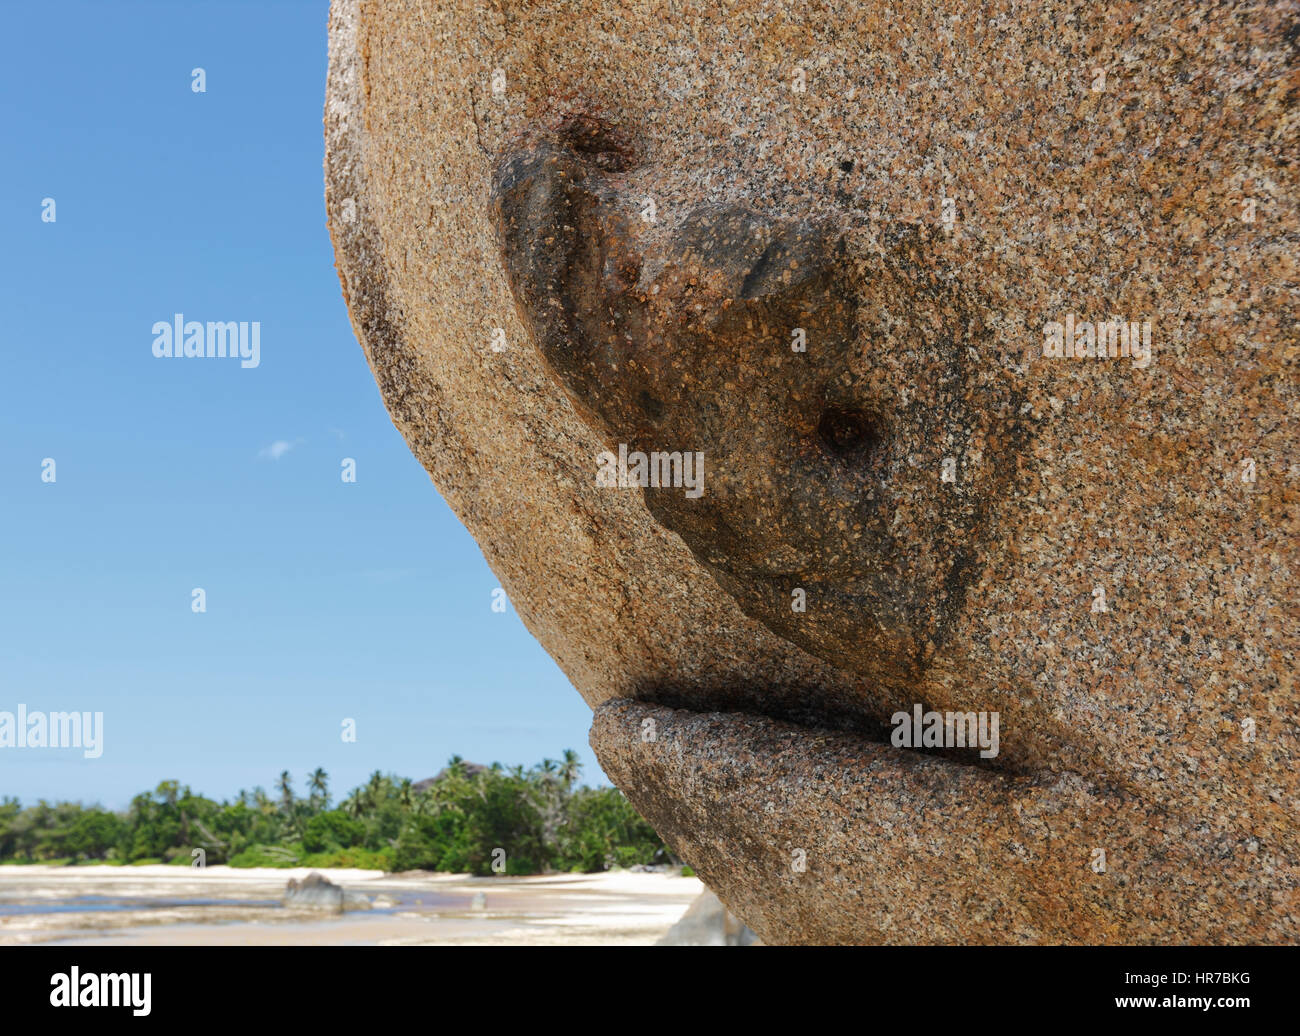 Sculpture naturelle de poissons requins sur la pierre de granit, l'île des Seychelles. Banque D'Images